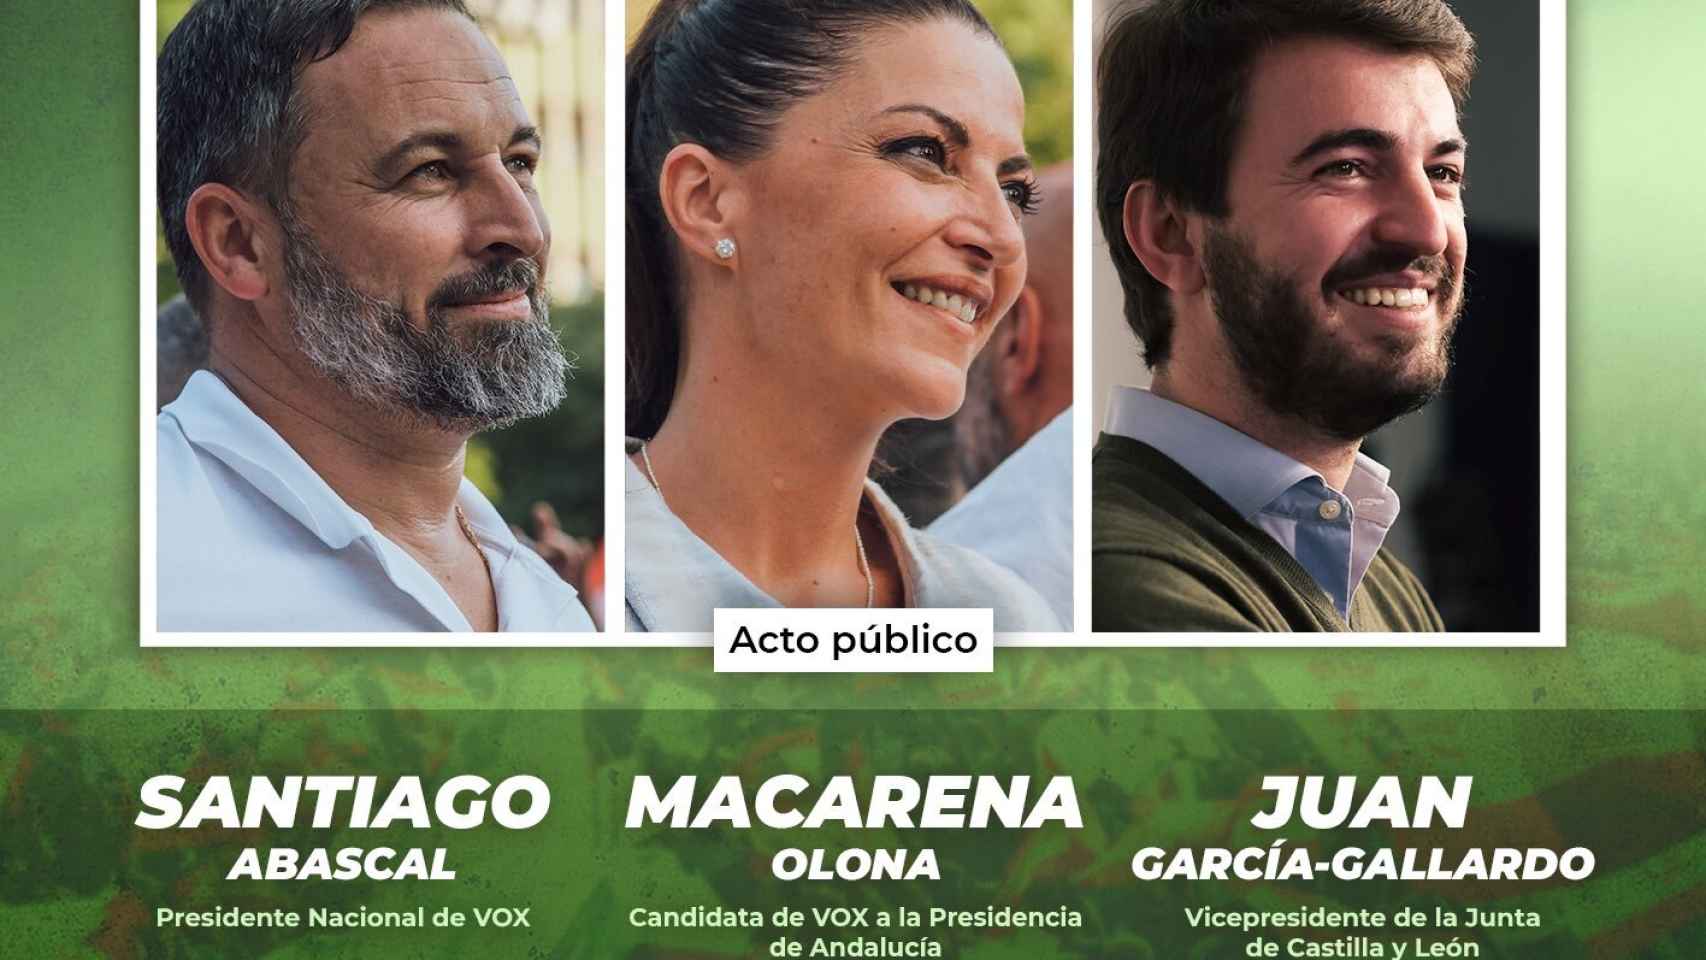 Cartel de la campaña electoral de Vox con Santiago Abascal, Macarena Olona y Juan García-Gallardo